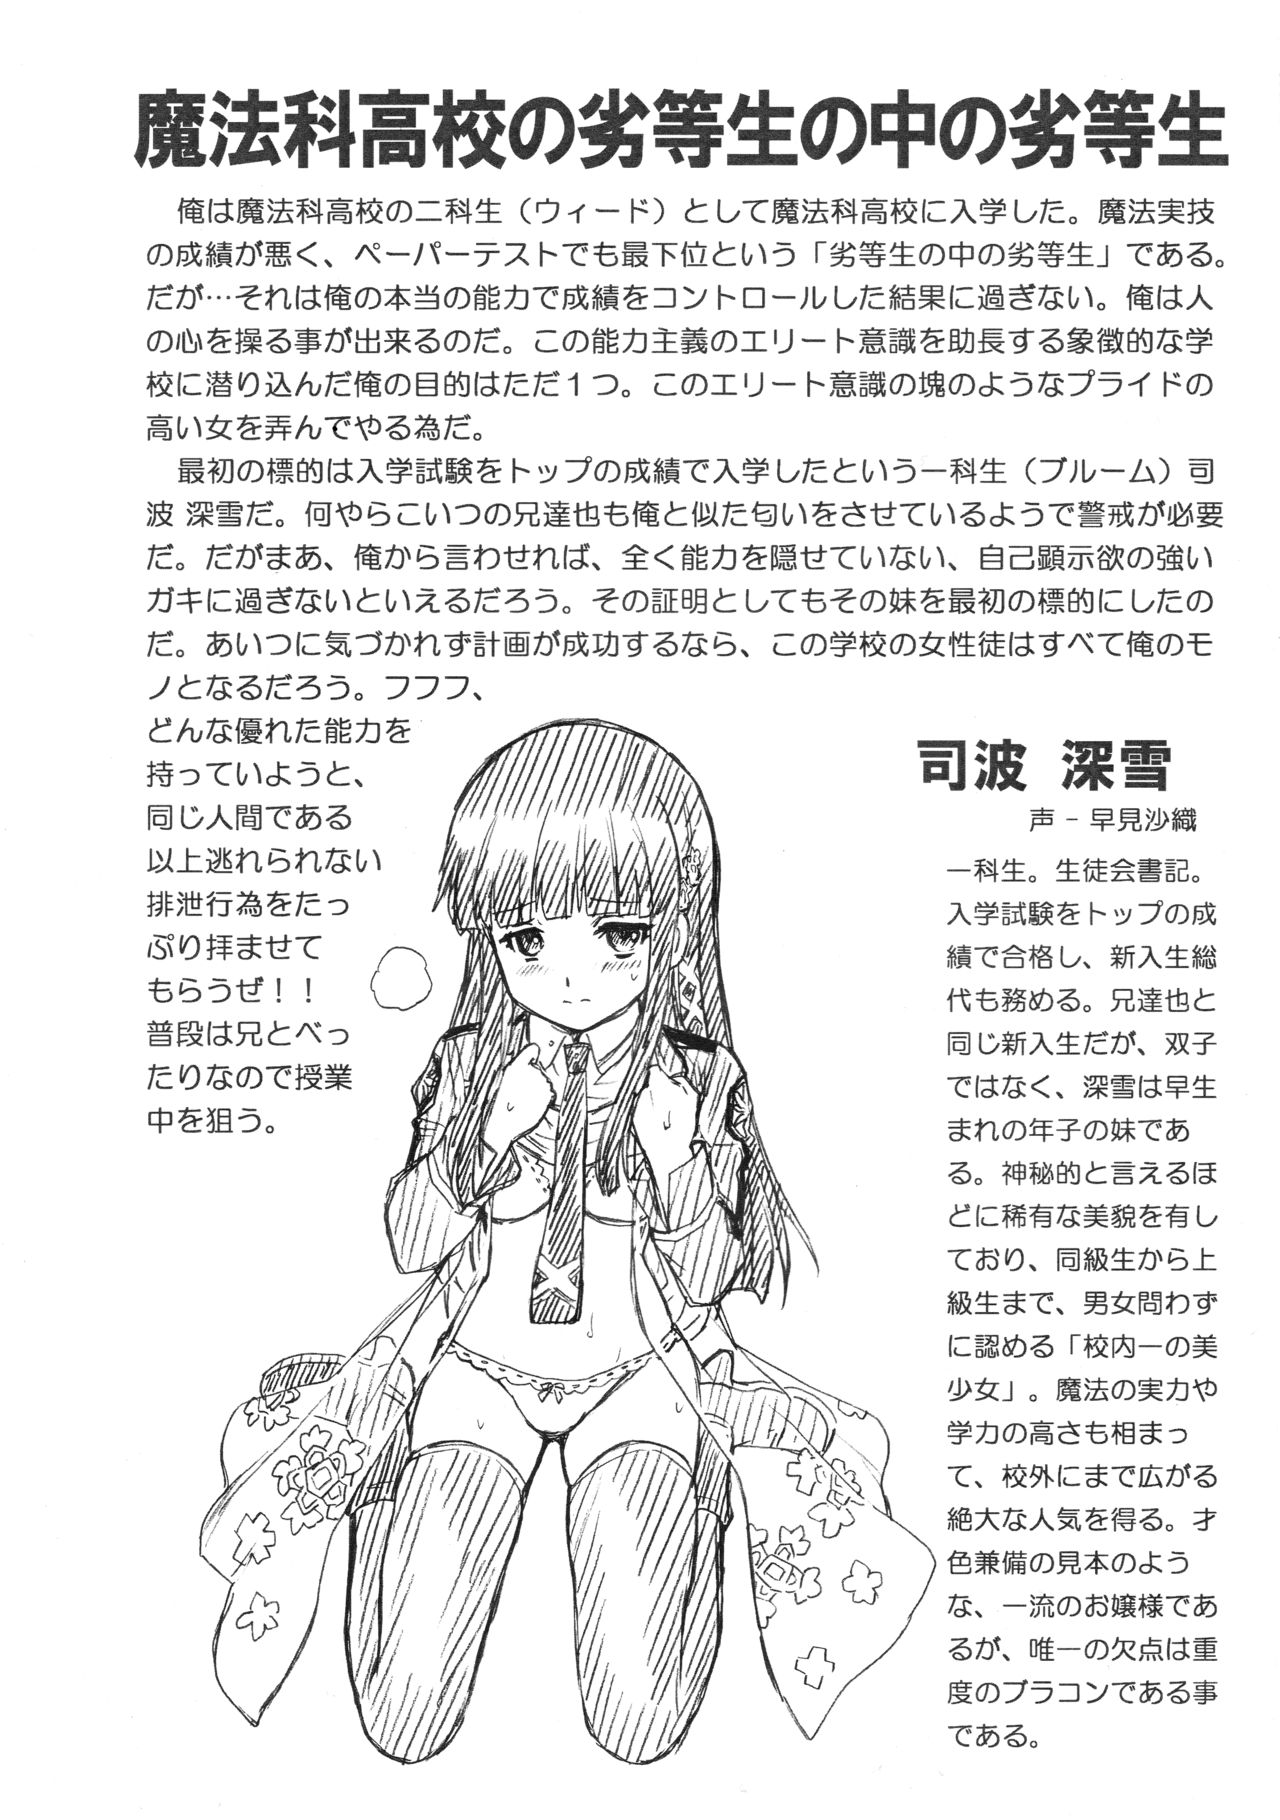 [Rat Tail (Irie Yamazaki)] RETTOUSEI FILE (Mahouka Koukou no Rettousei) page 2 full